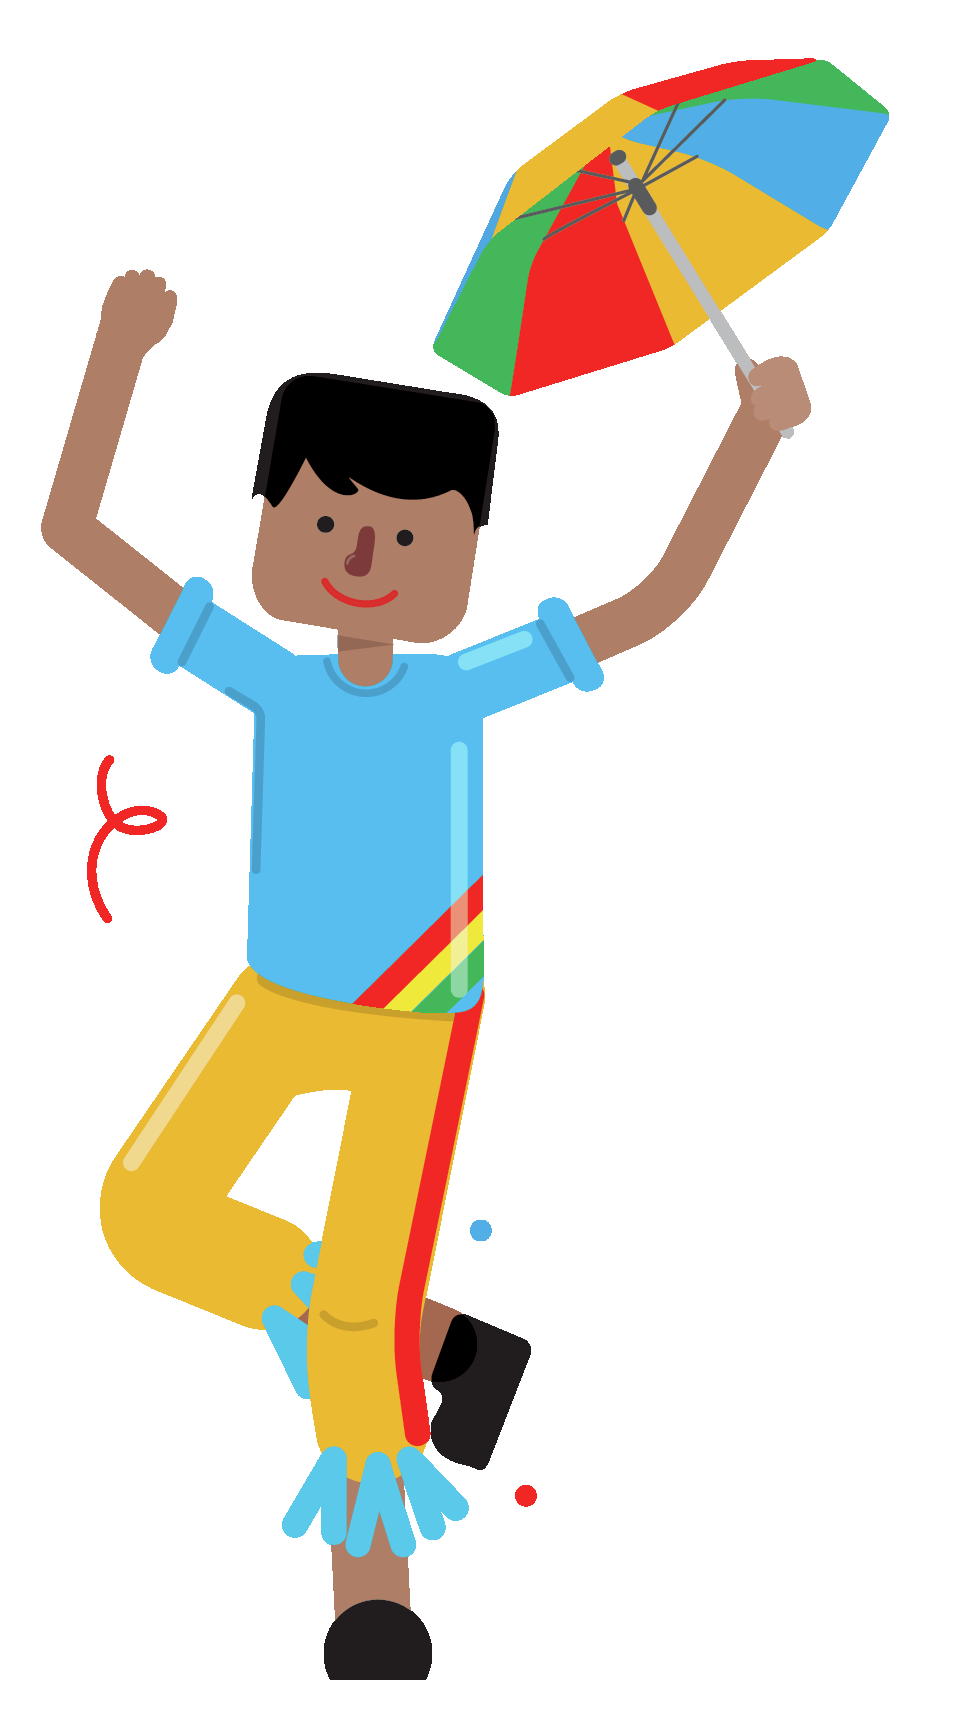 Ilustração. Homem de camisa azul, calça laranja dançando entre serpentinas. Ele segura um guarda-chuva colorido.